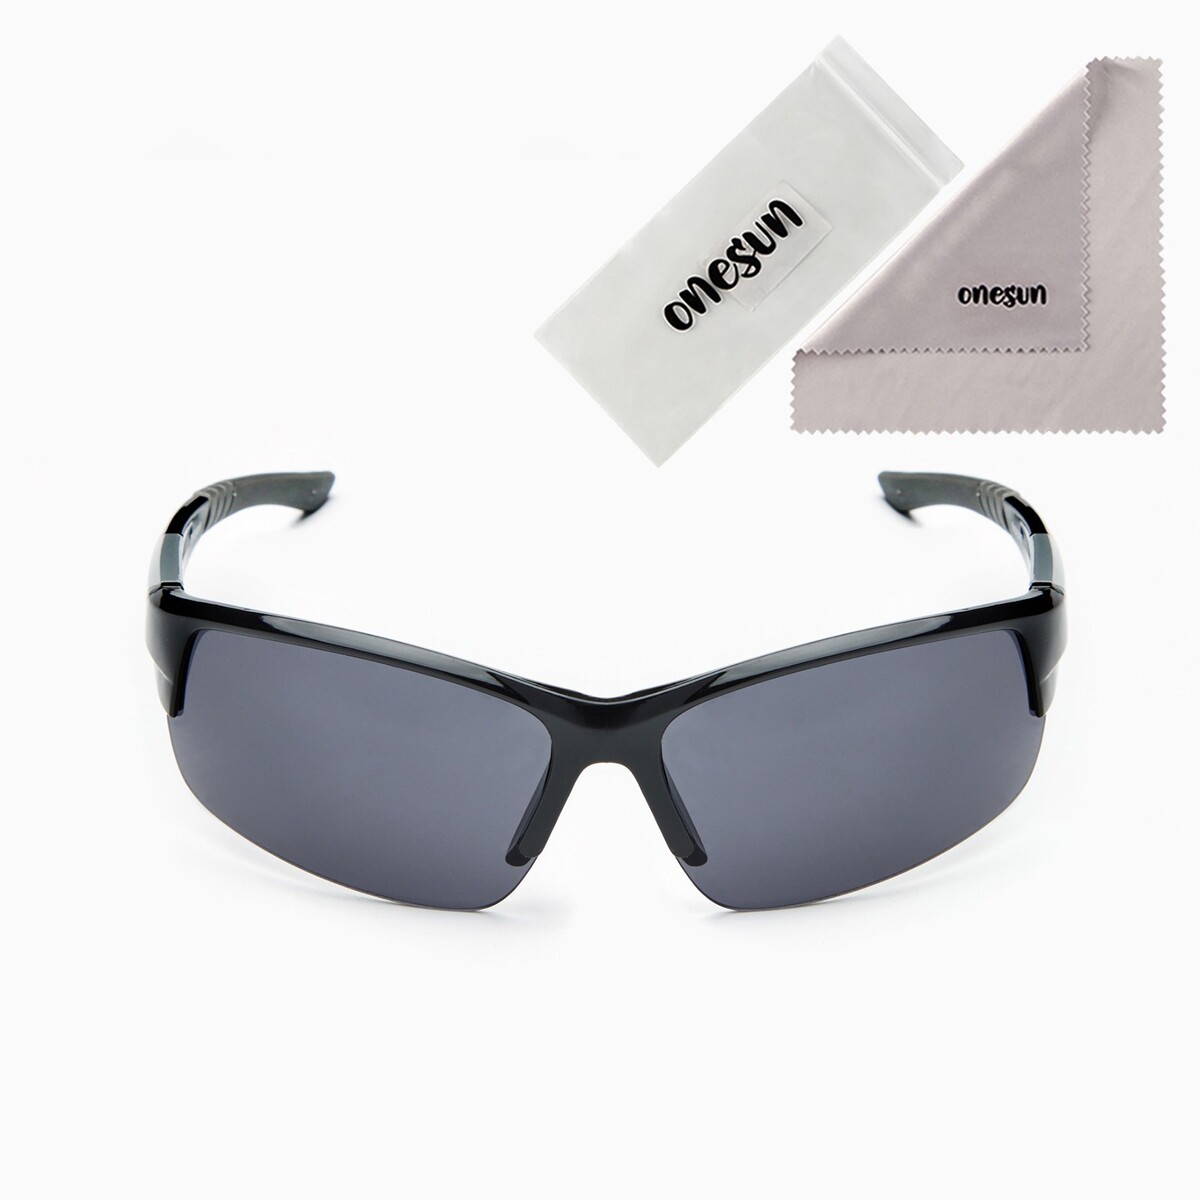 Очки солнцезащитные спортивные очки солнцезащитные uv 400 кожаные шторки дужка 14 1 см ширина 12 1 см линза 5 2 х 5 см